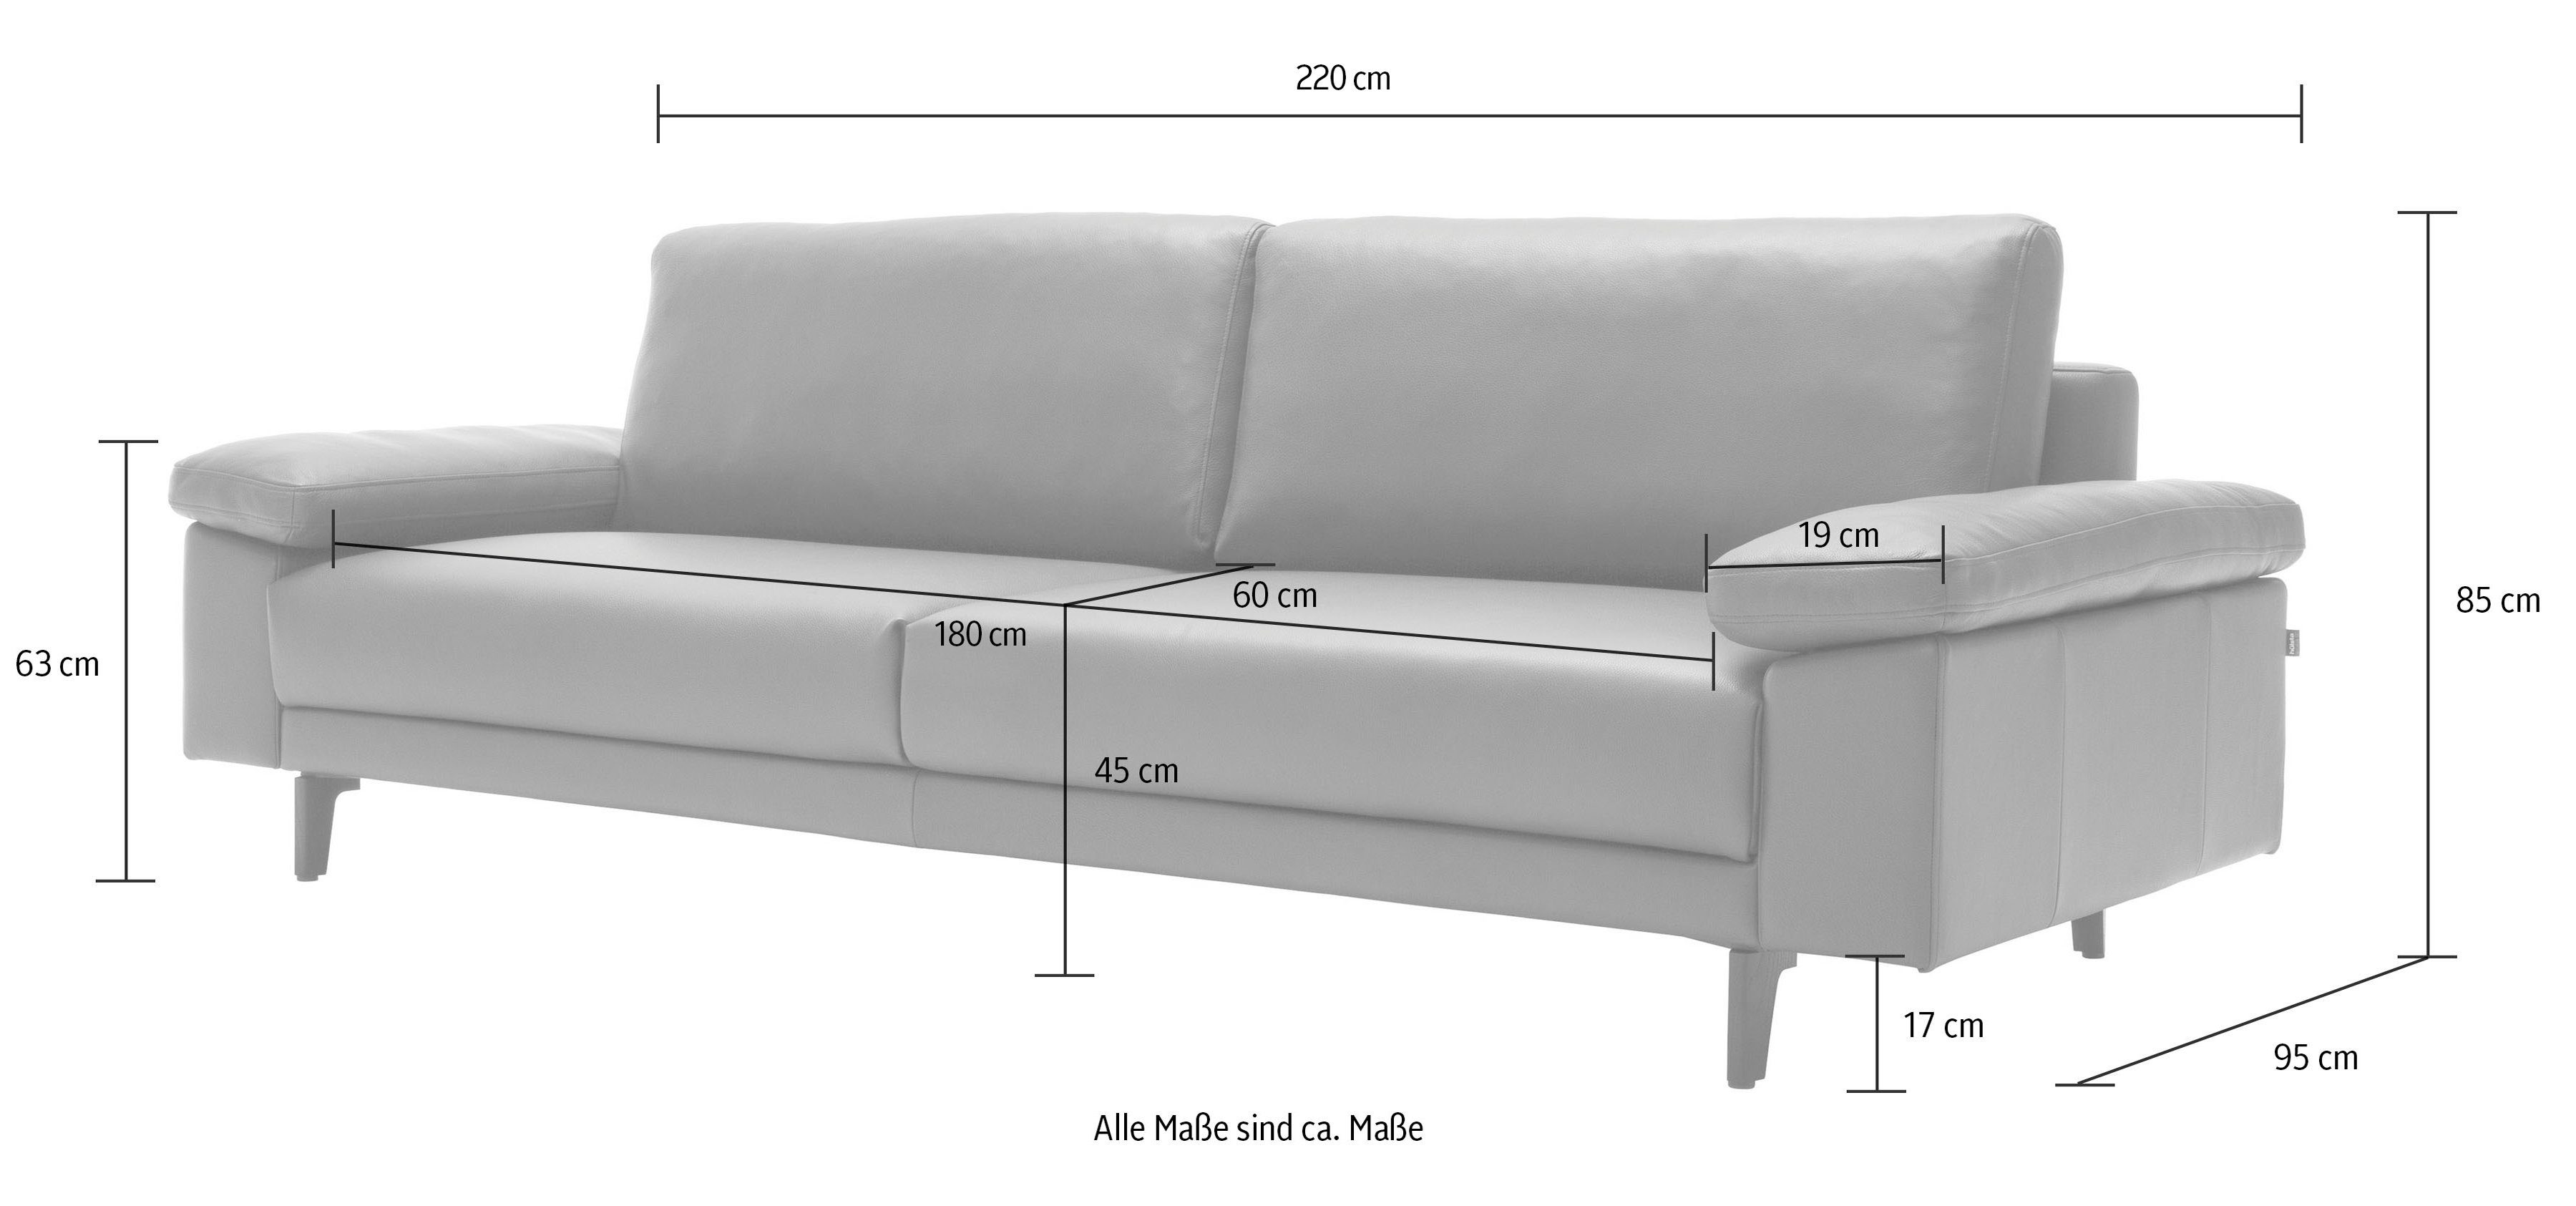 3-Sitzer hs.450 hülsta sofa